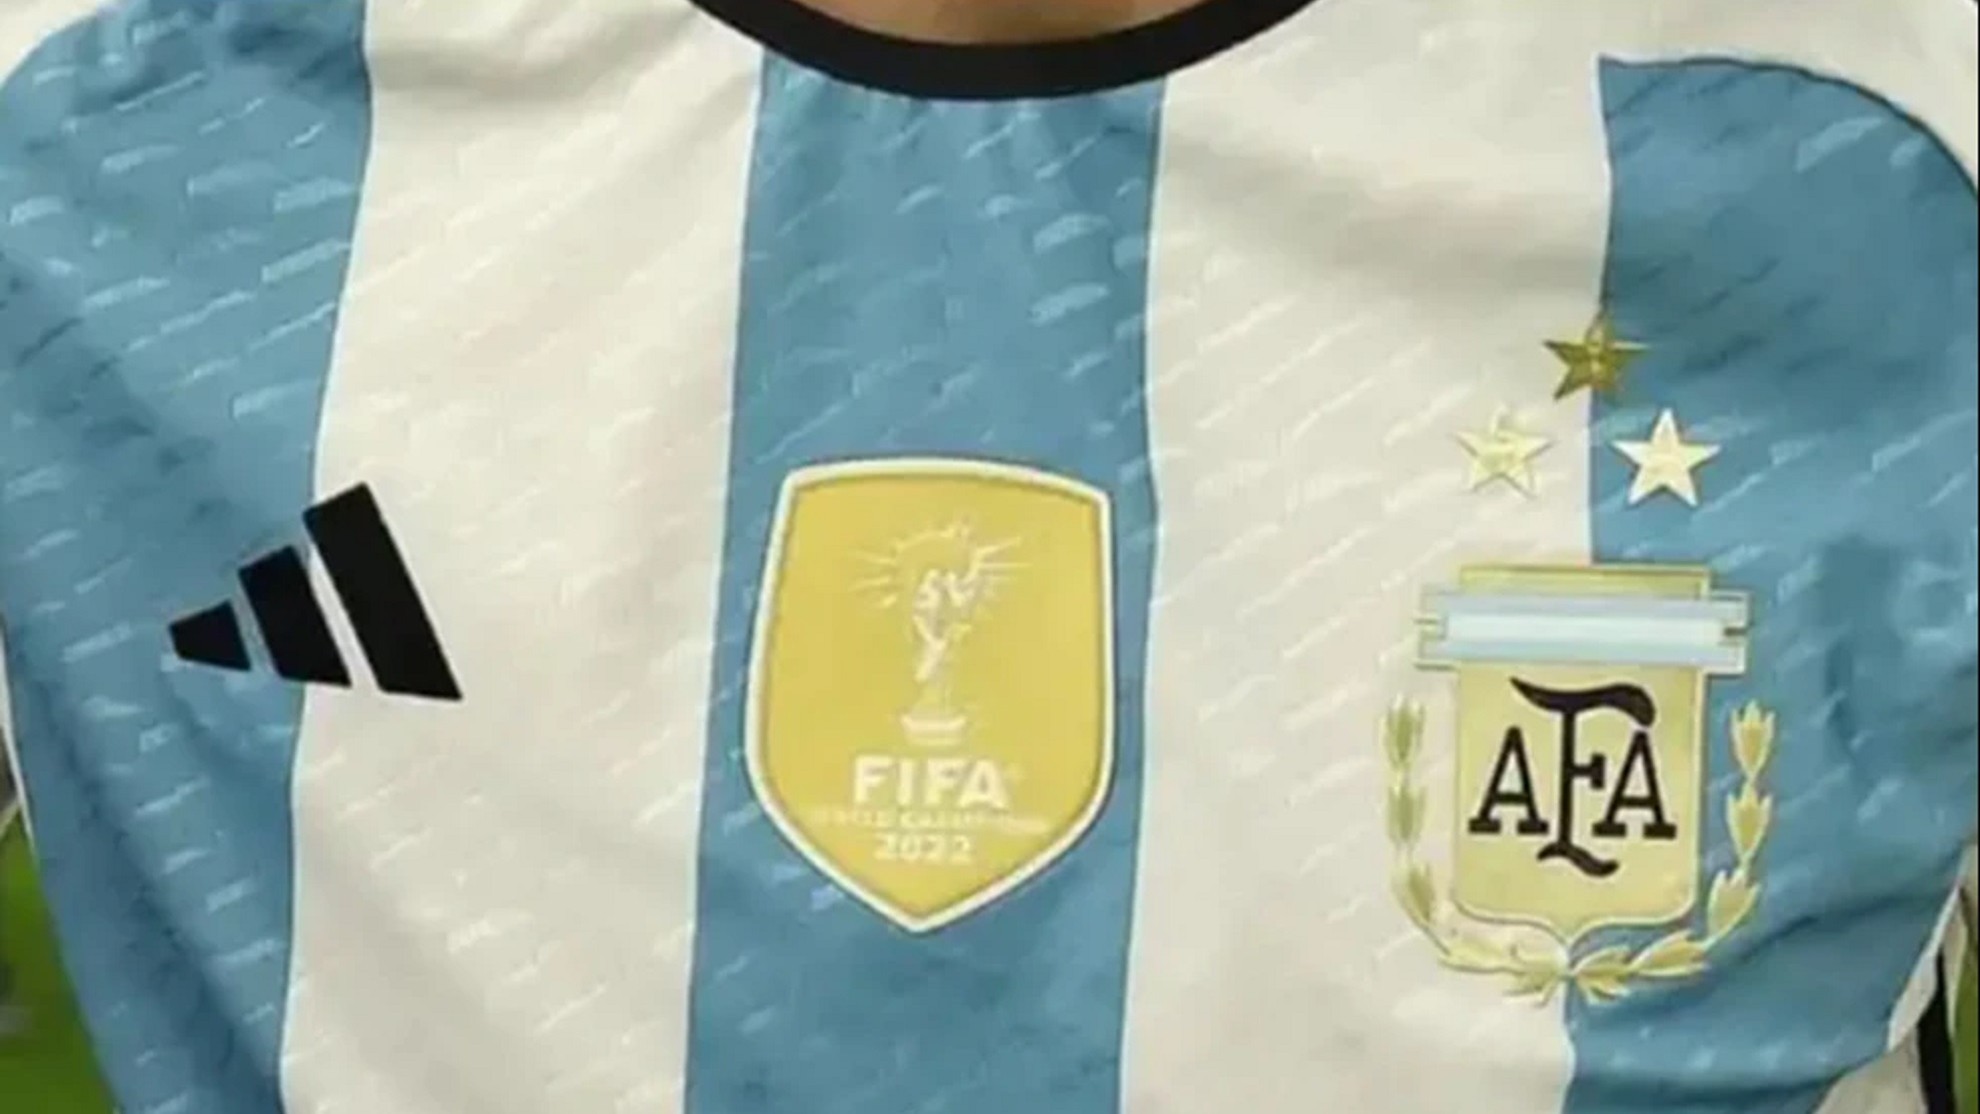 Argentina estrena camiseta con las ansiadas 3 estrellas y se agota en unas horas | Marcausa